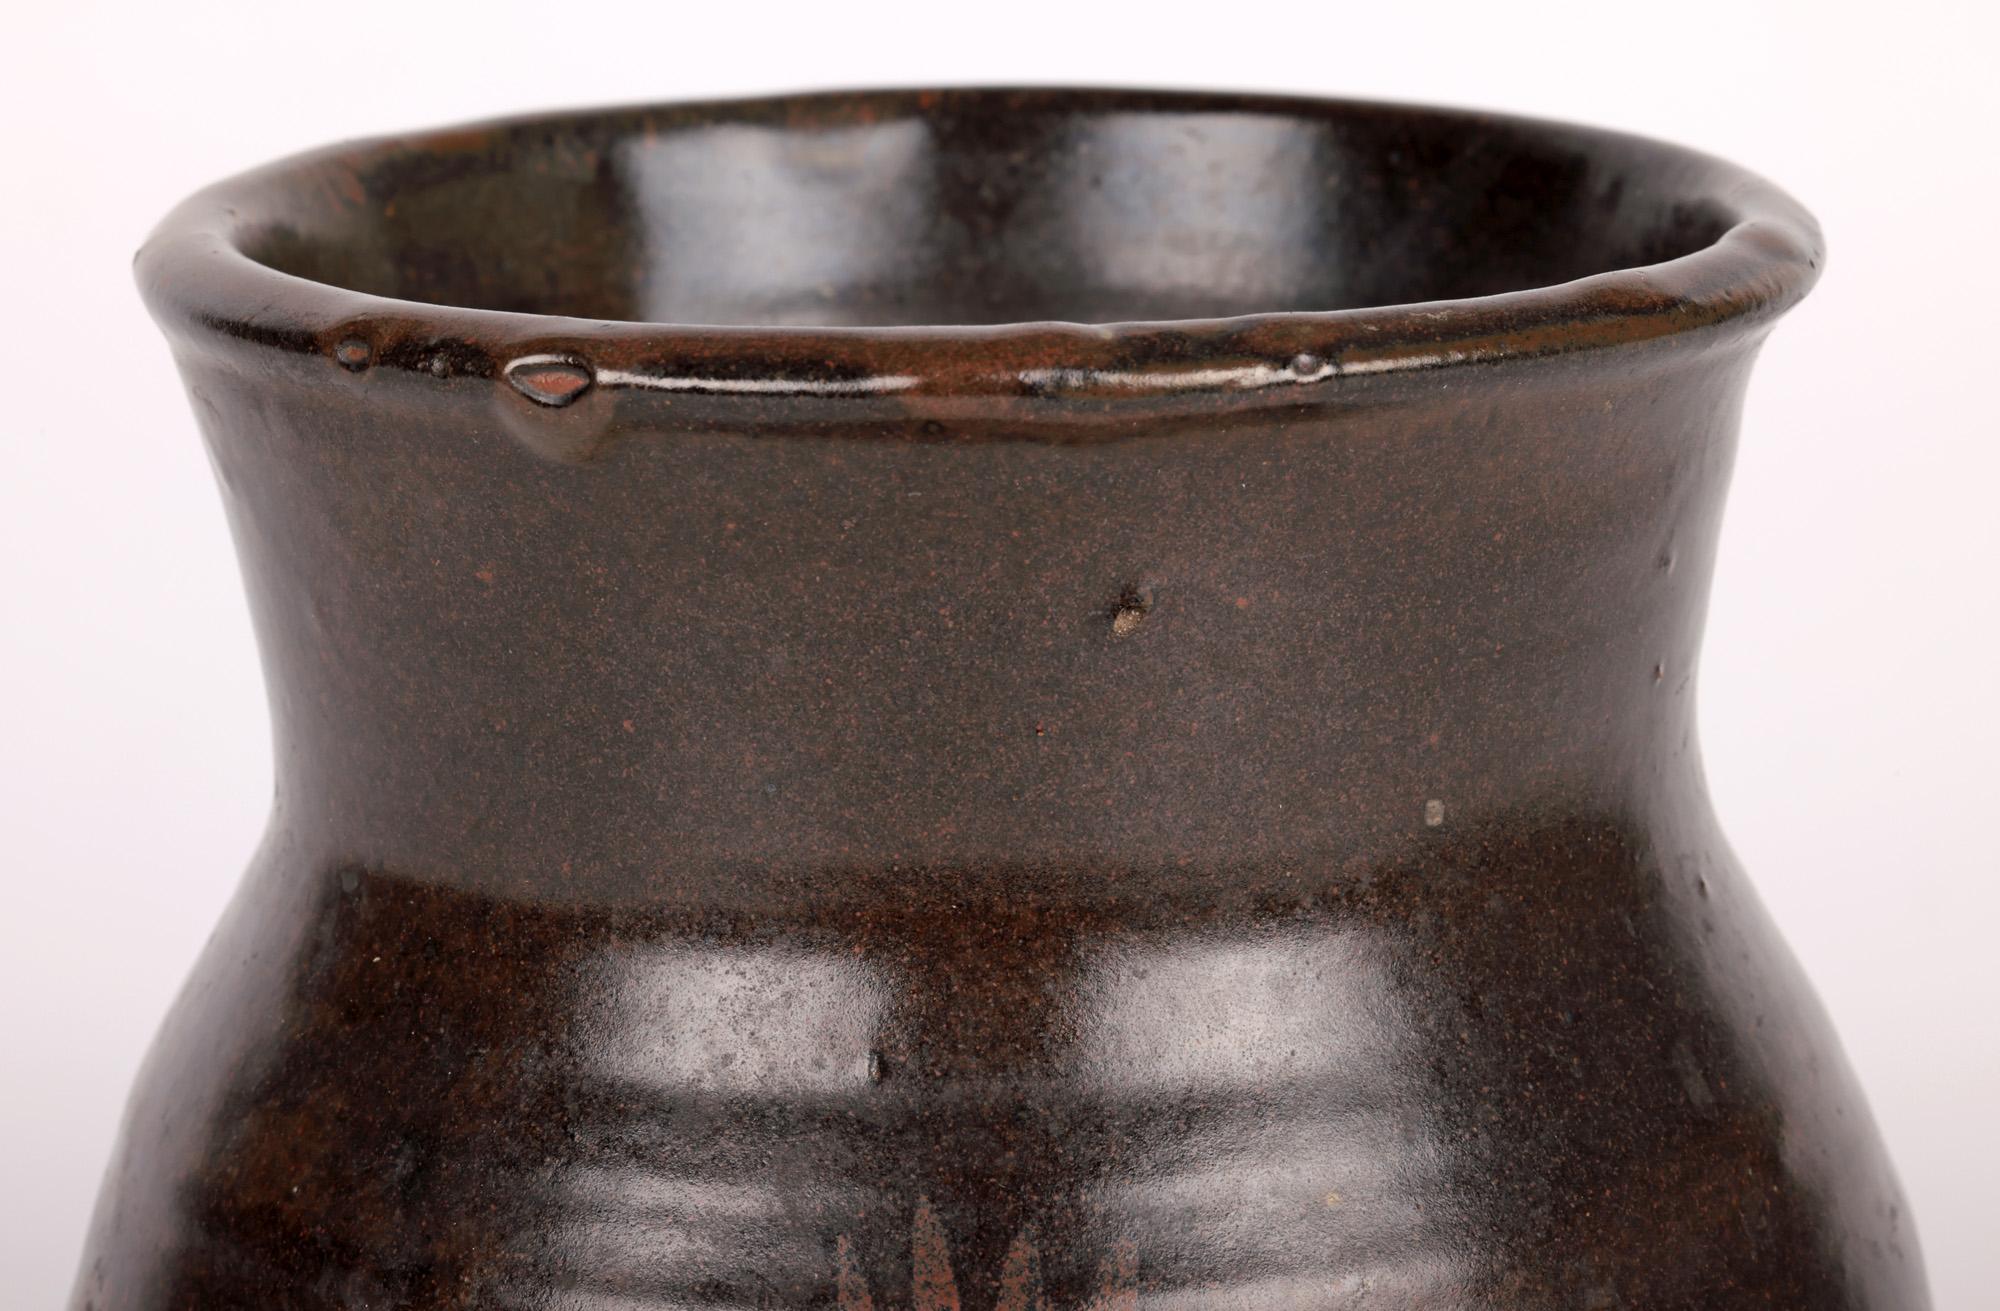 Eine seltene und frühe Vase aus dem Studio von Leach Pottery mit einem Fingerhut-Muster, das David Leach (Brite, 1911-2005) zugeschrieben wird und aus der Zeit um 1930 stammt. David begann 1930 zusammen mit seinem Vater in der Leach Pottery in St.